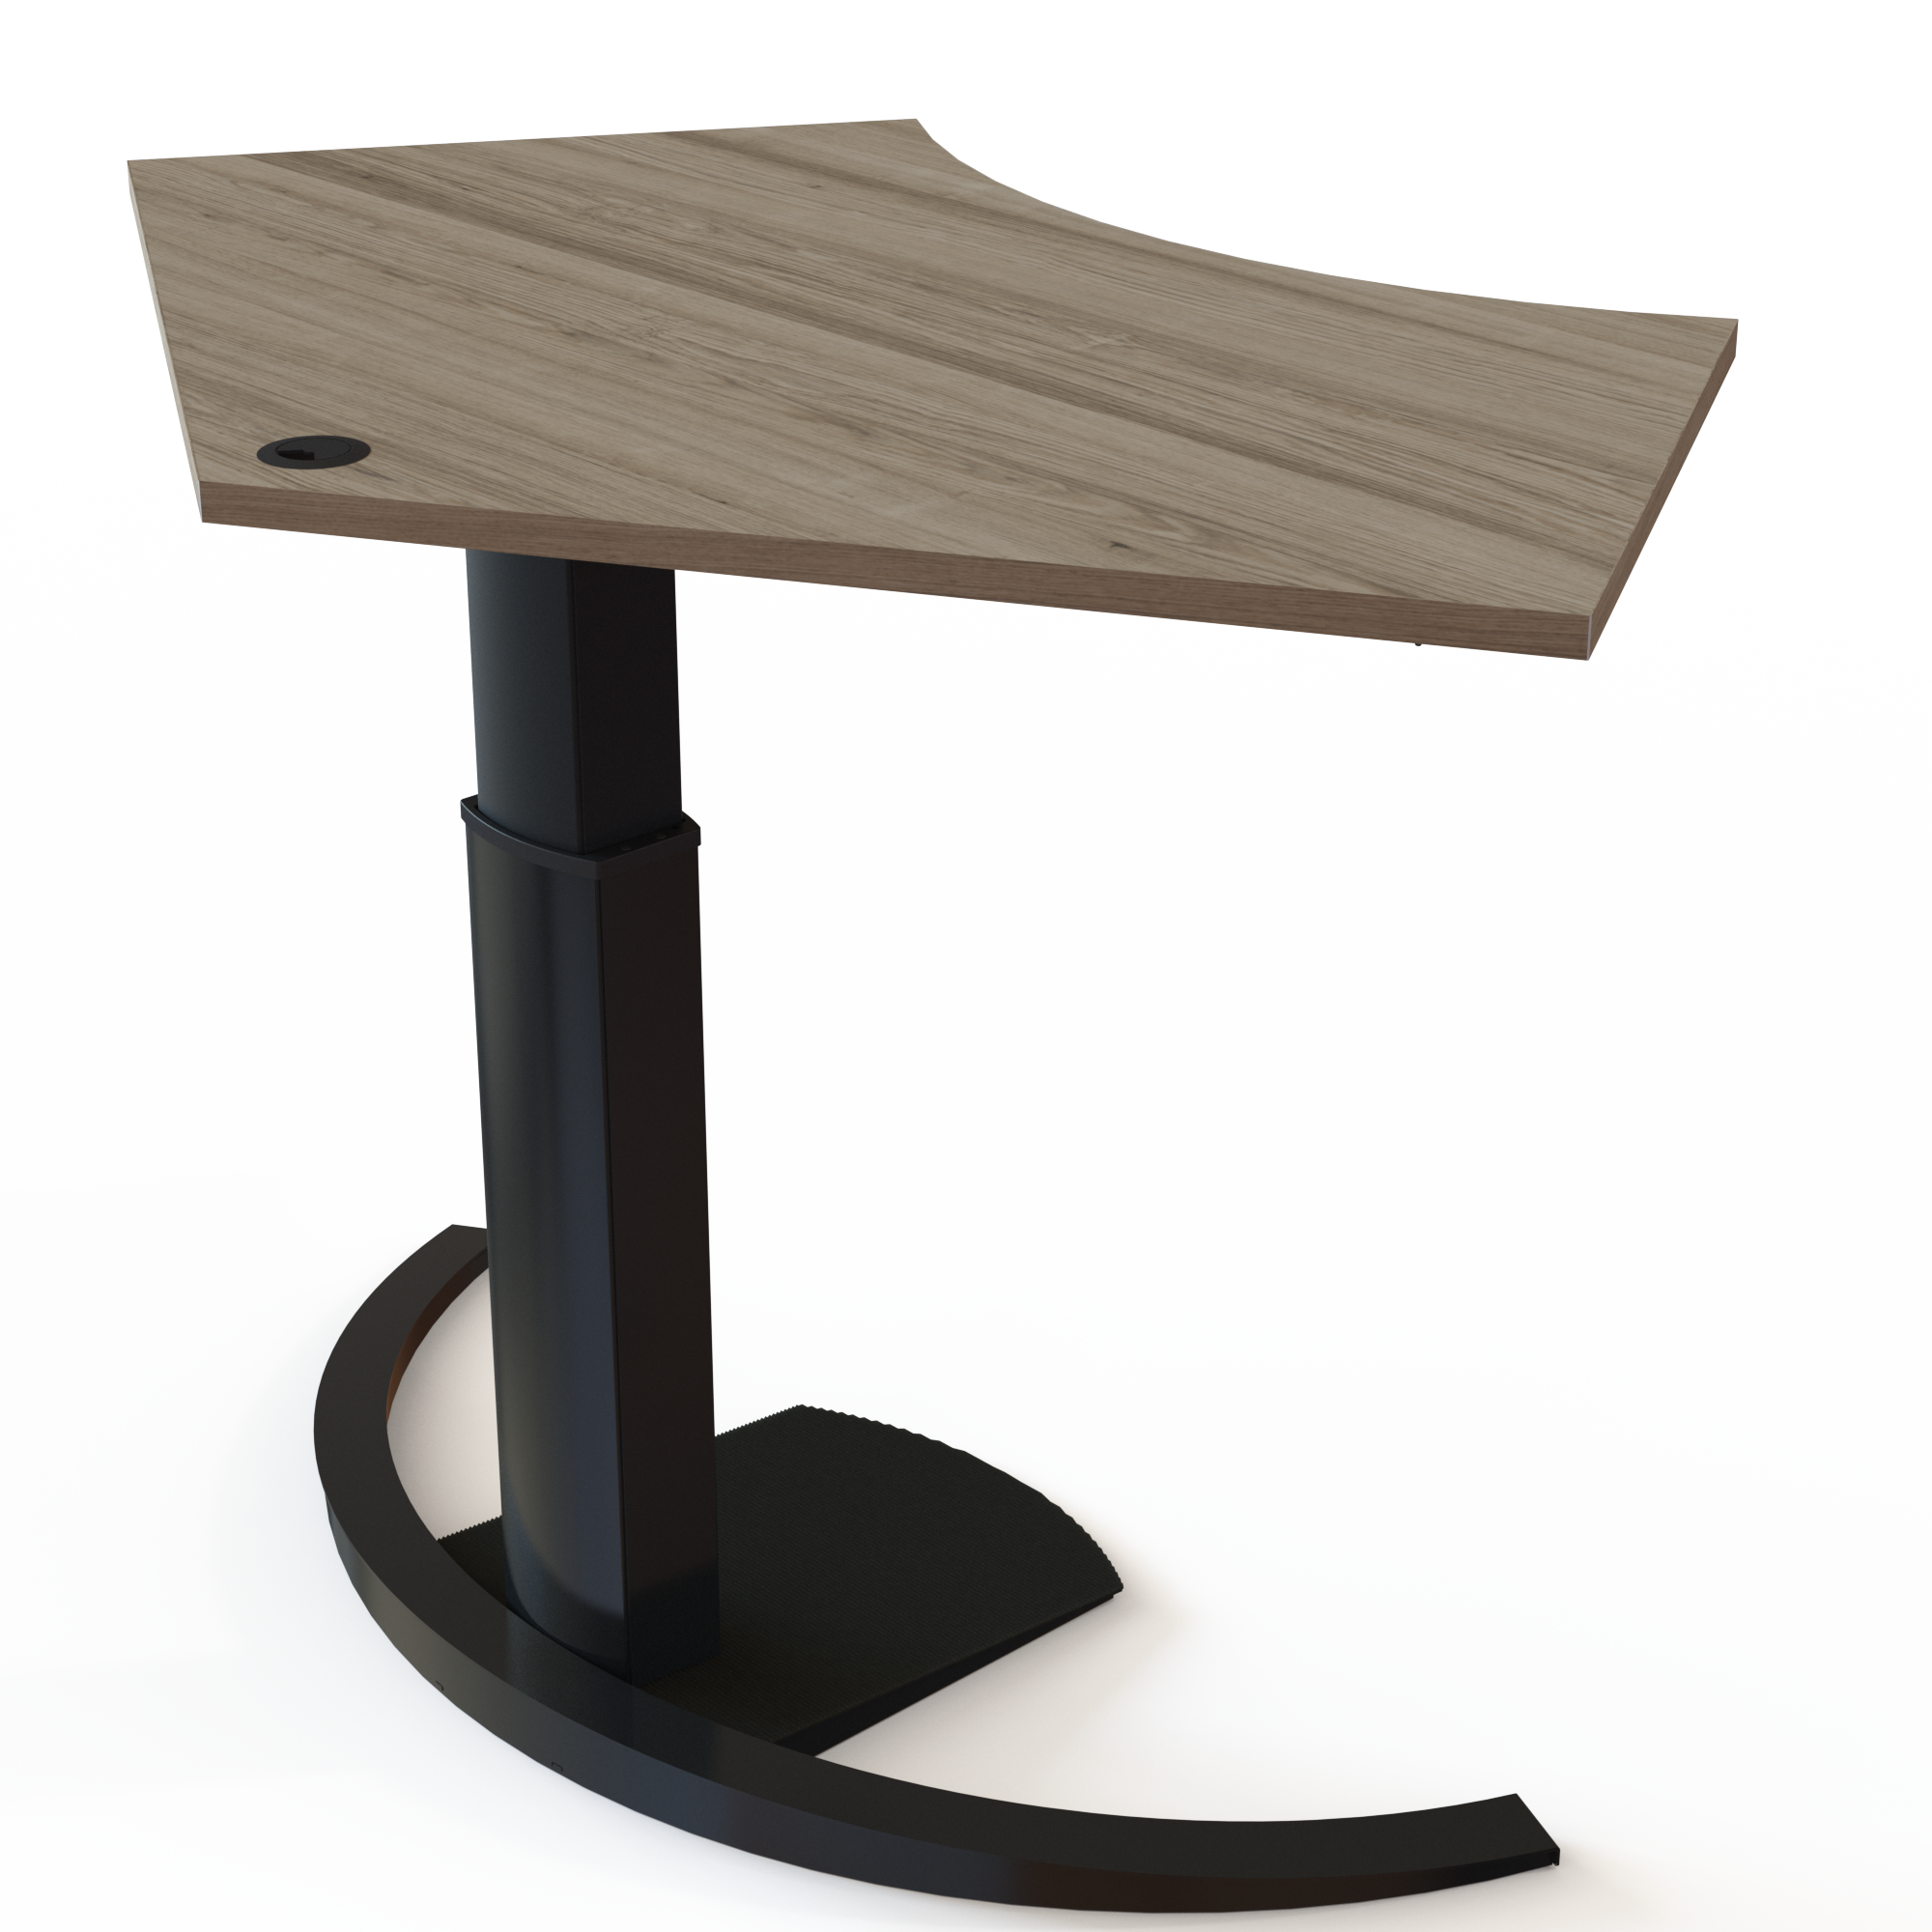 Electric Adjustable Desk | 138x92 cm | Walnut with black frame